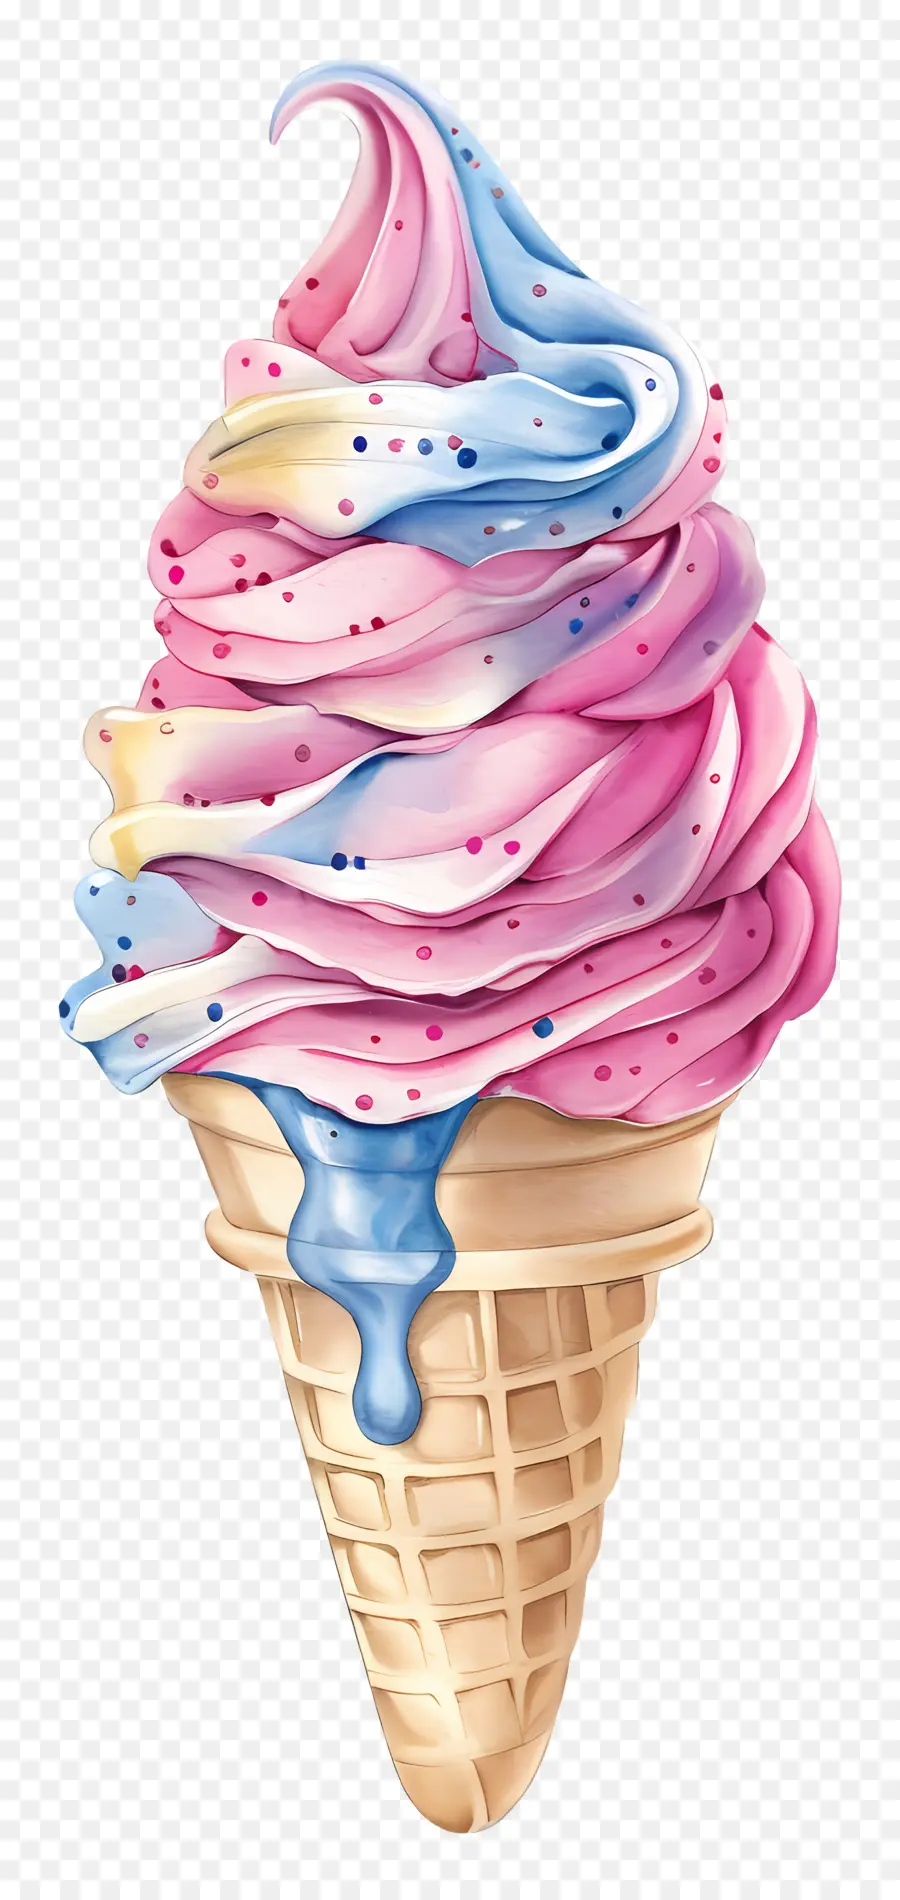 kem mềm màu kem minh họa màu kem hình nón hồng và sô cô la xanh - Hình minh họa kem hình nón đầy màu sắc